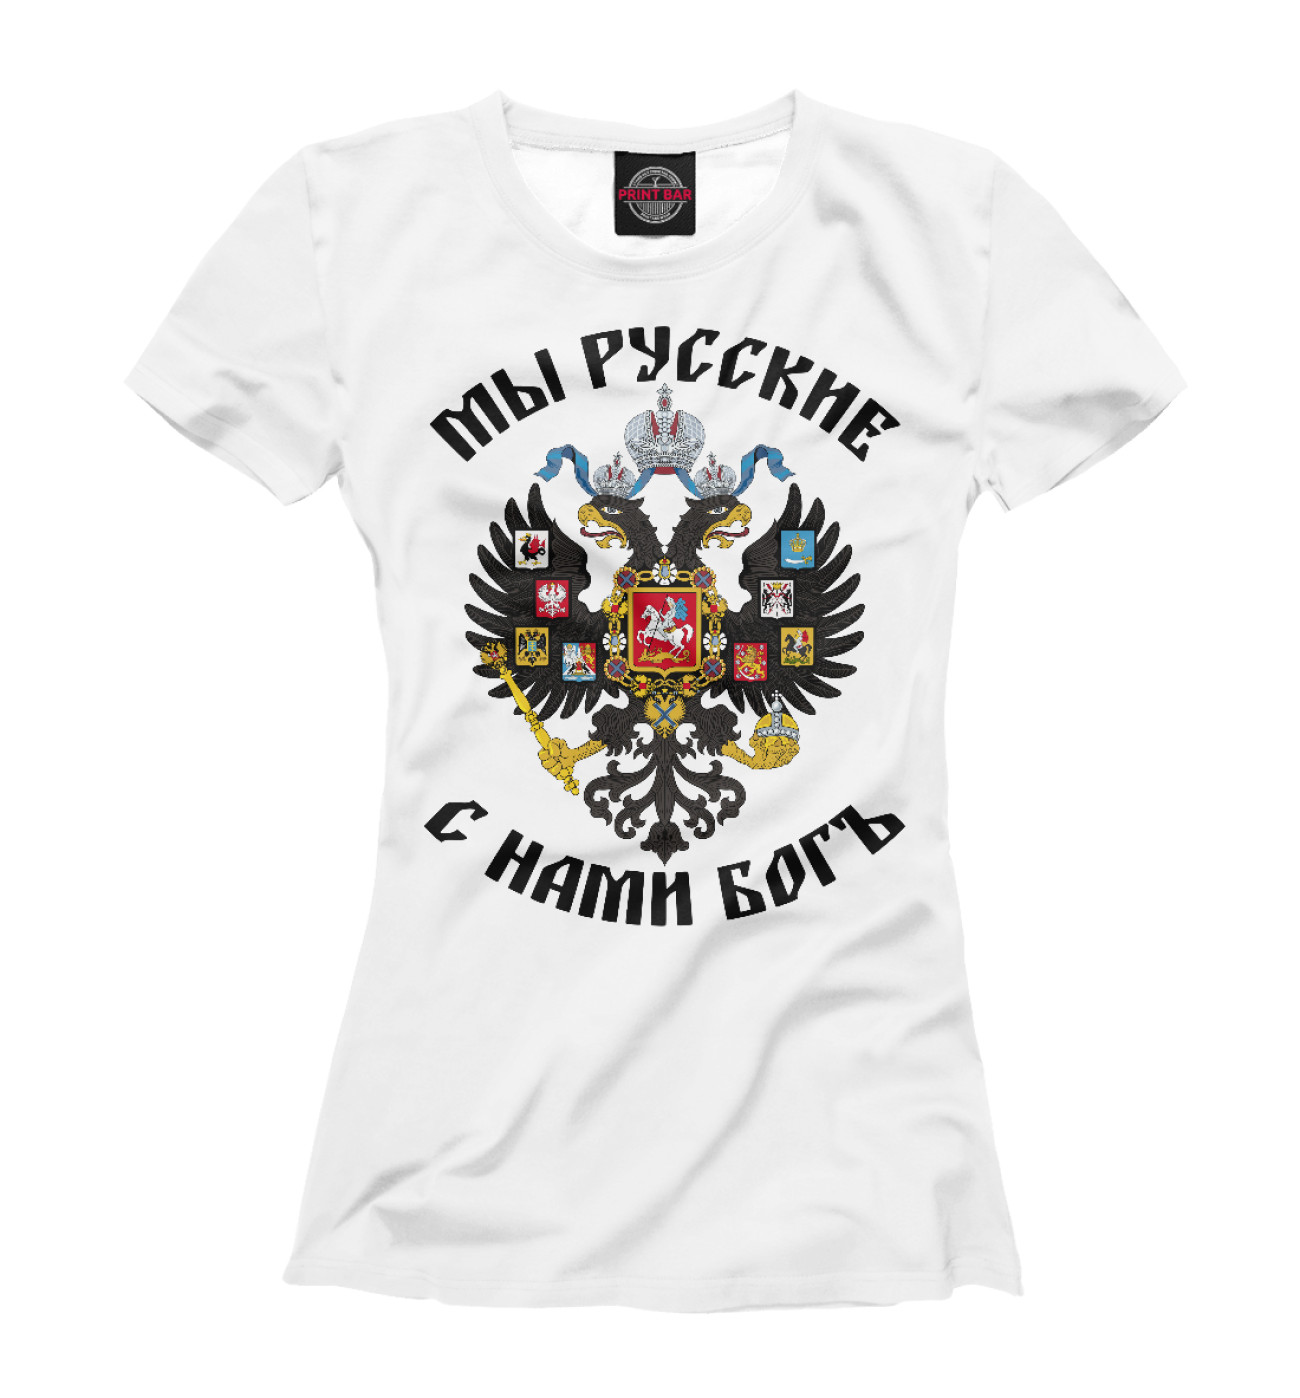 Мы русские с нами Бог футболка